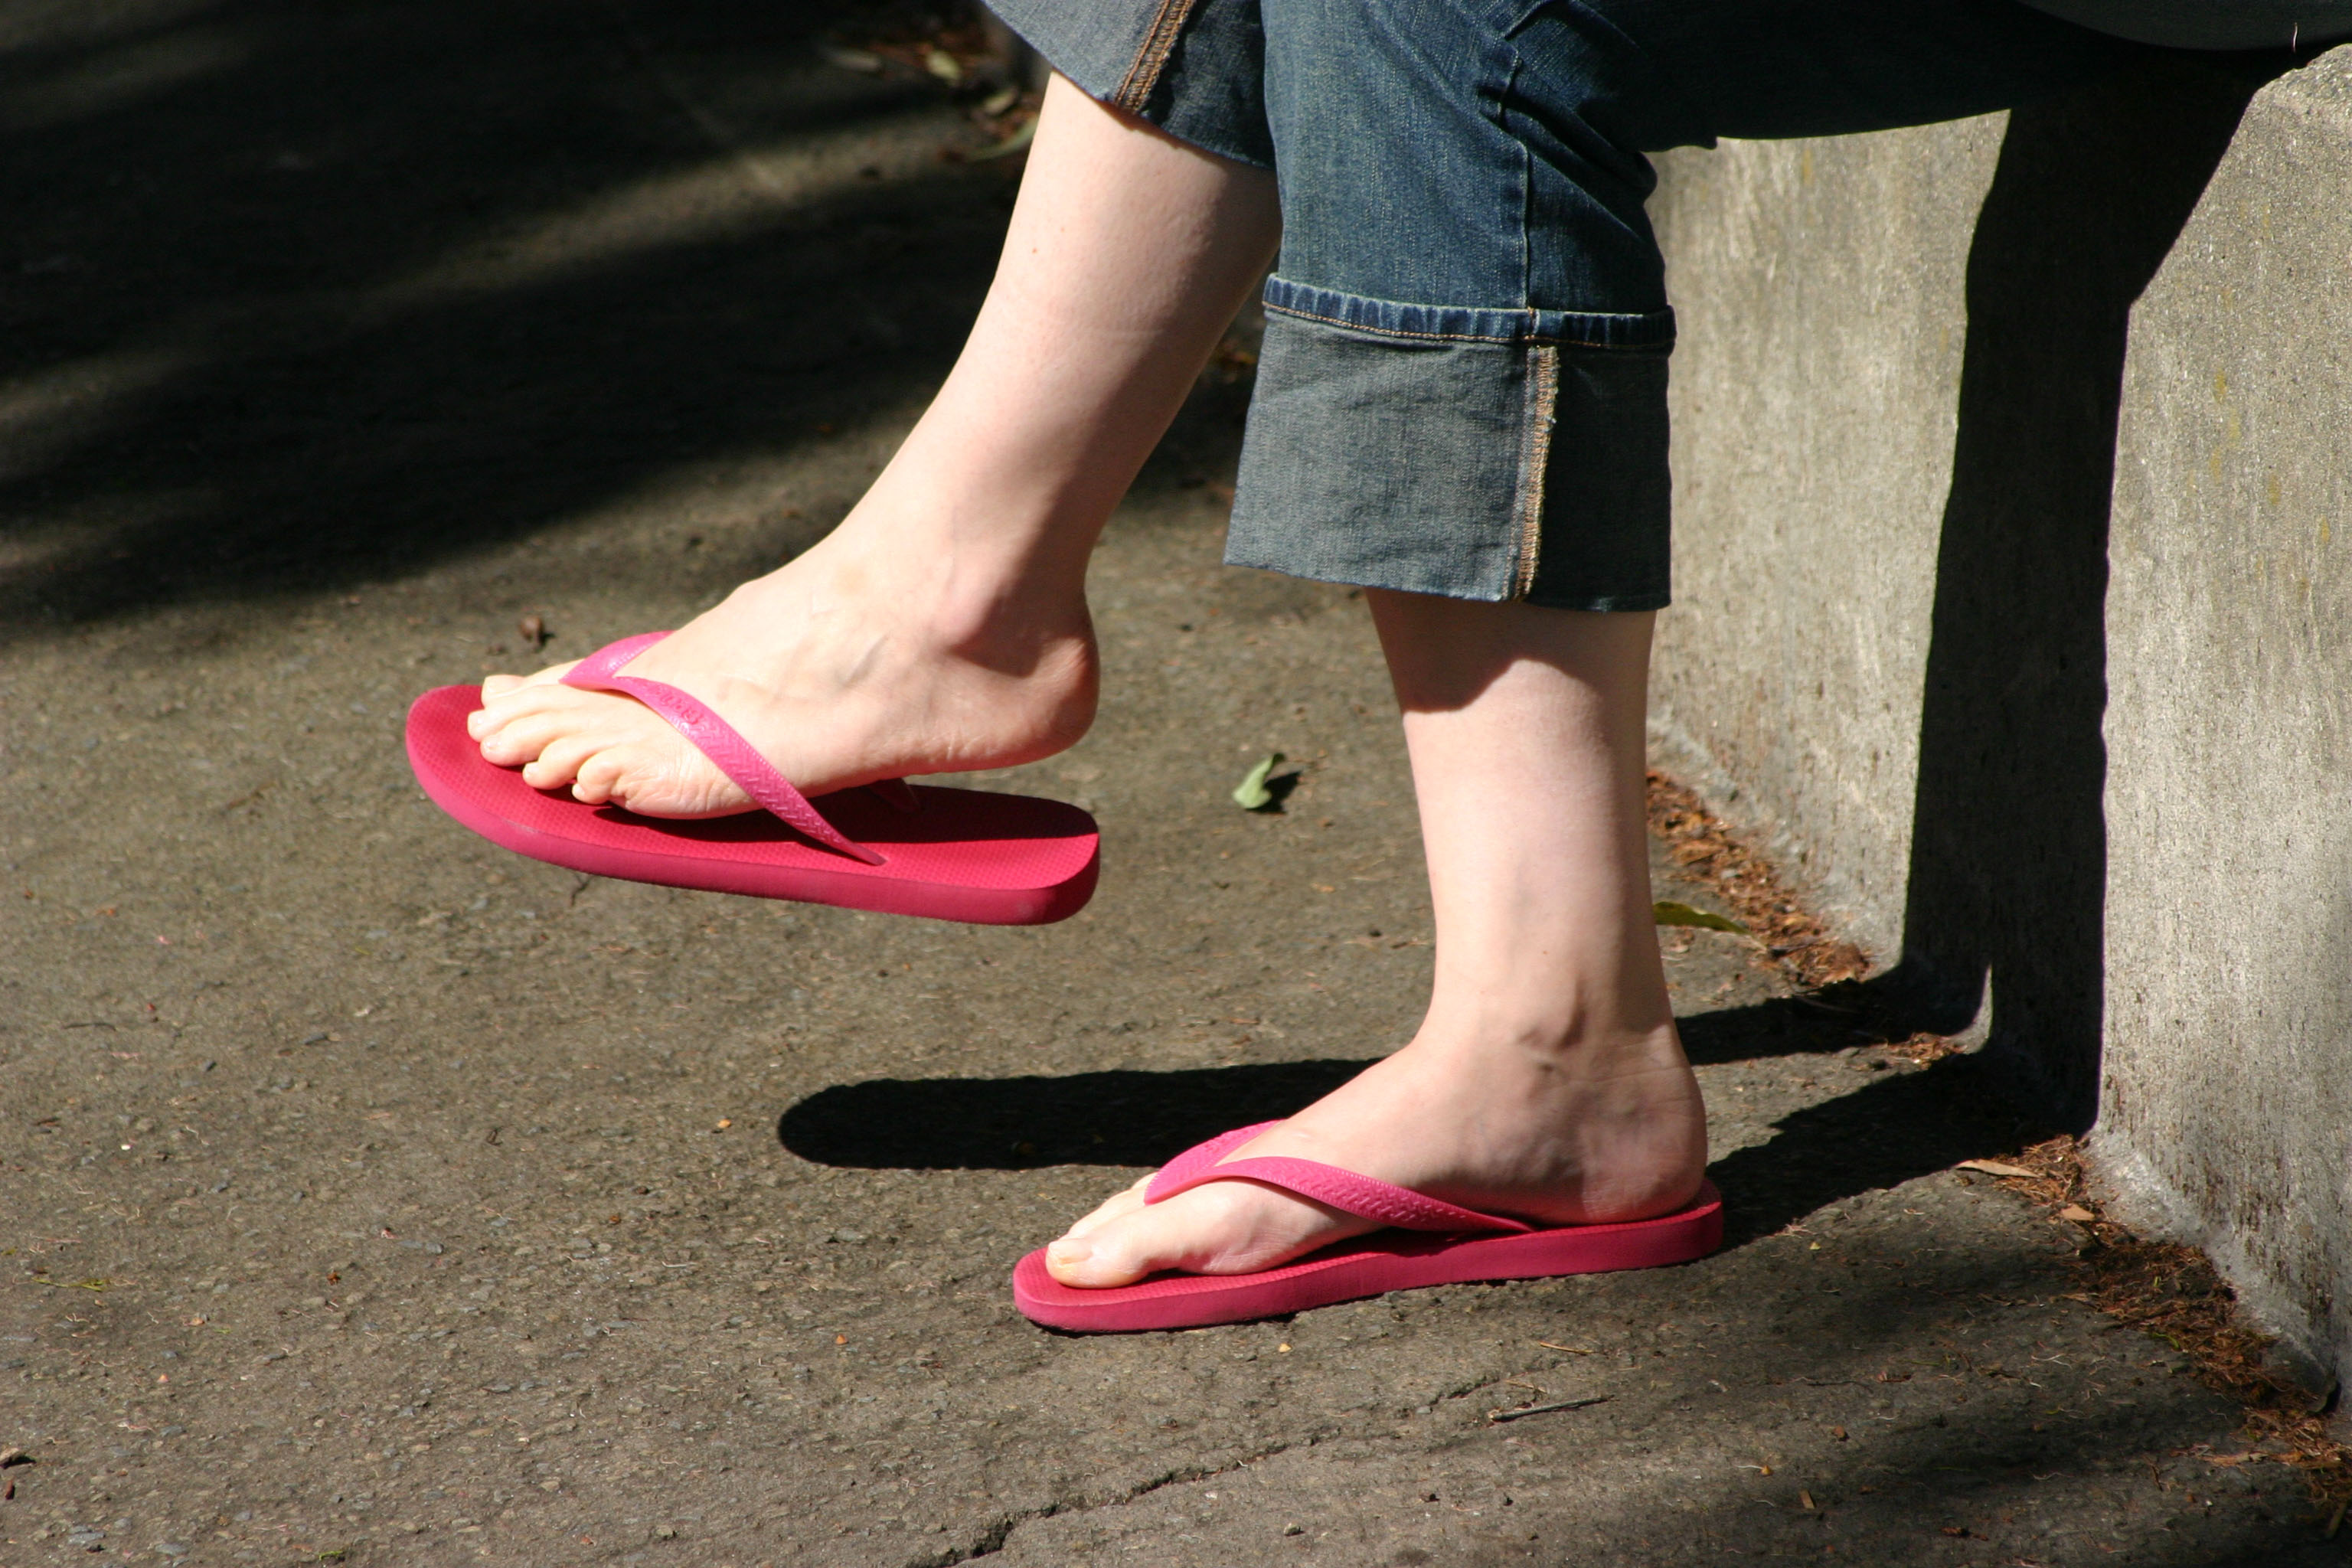 Woman wearing red flip flops